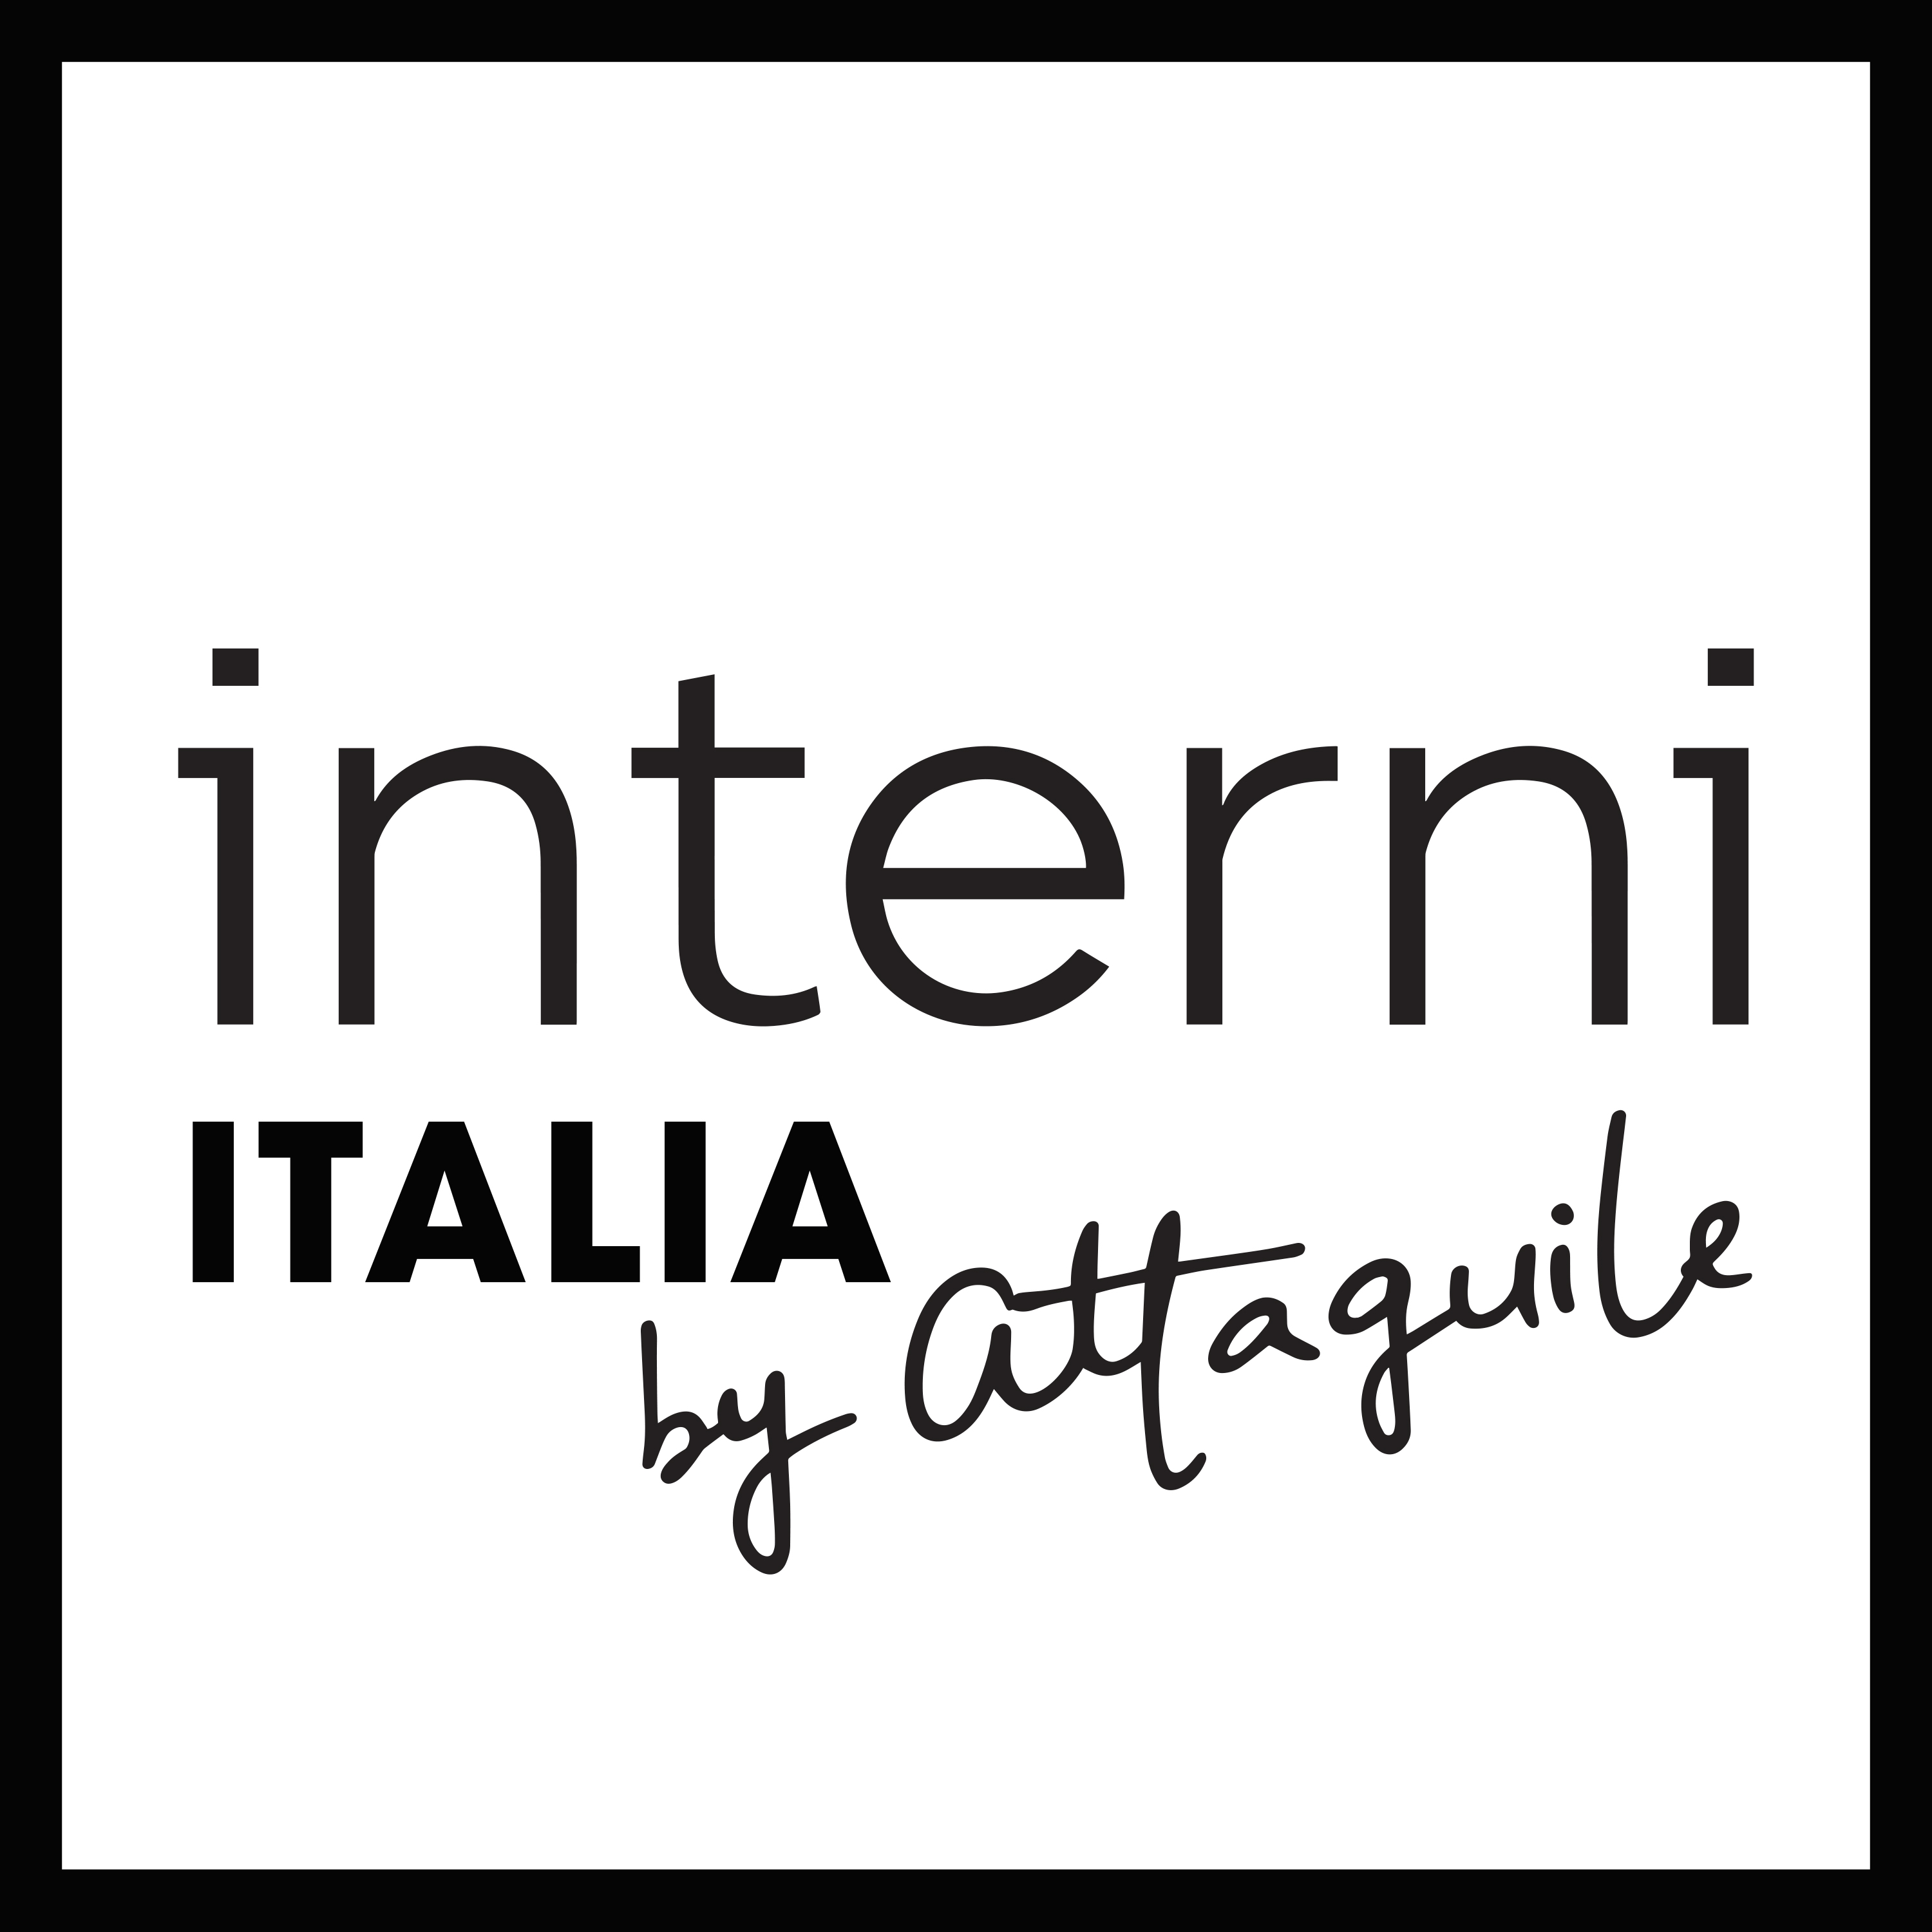 Interni Italia by Attaguile